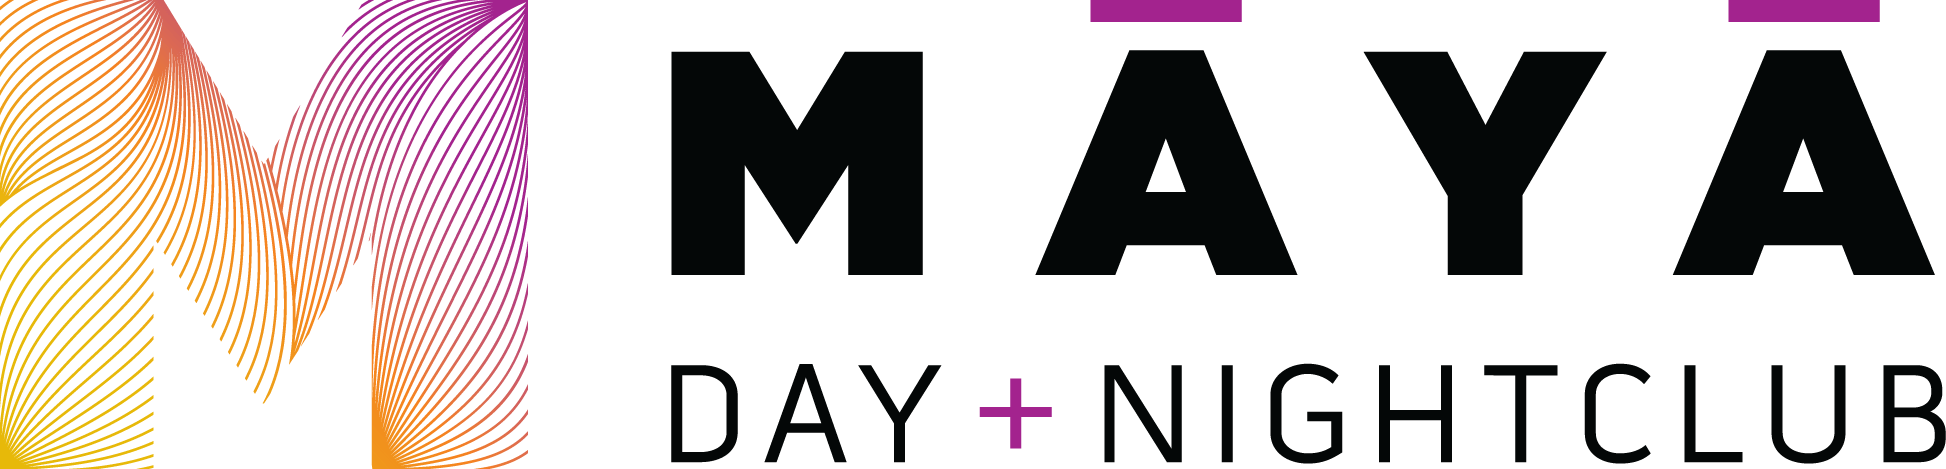 Scottsdale Logo - Maya Day & Nightclub | Scottsdale Nightclubs | Scottsdale Bars